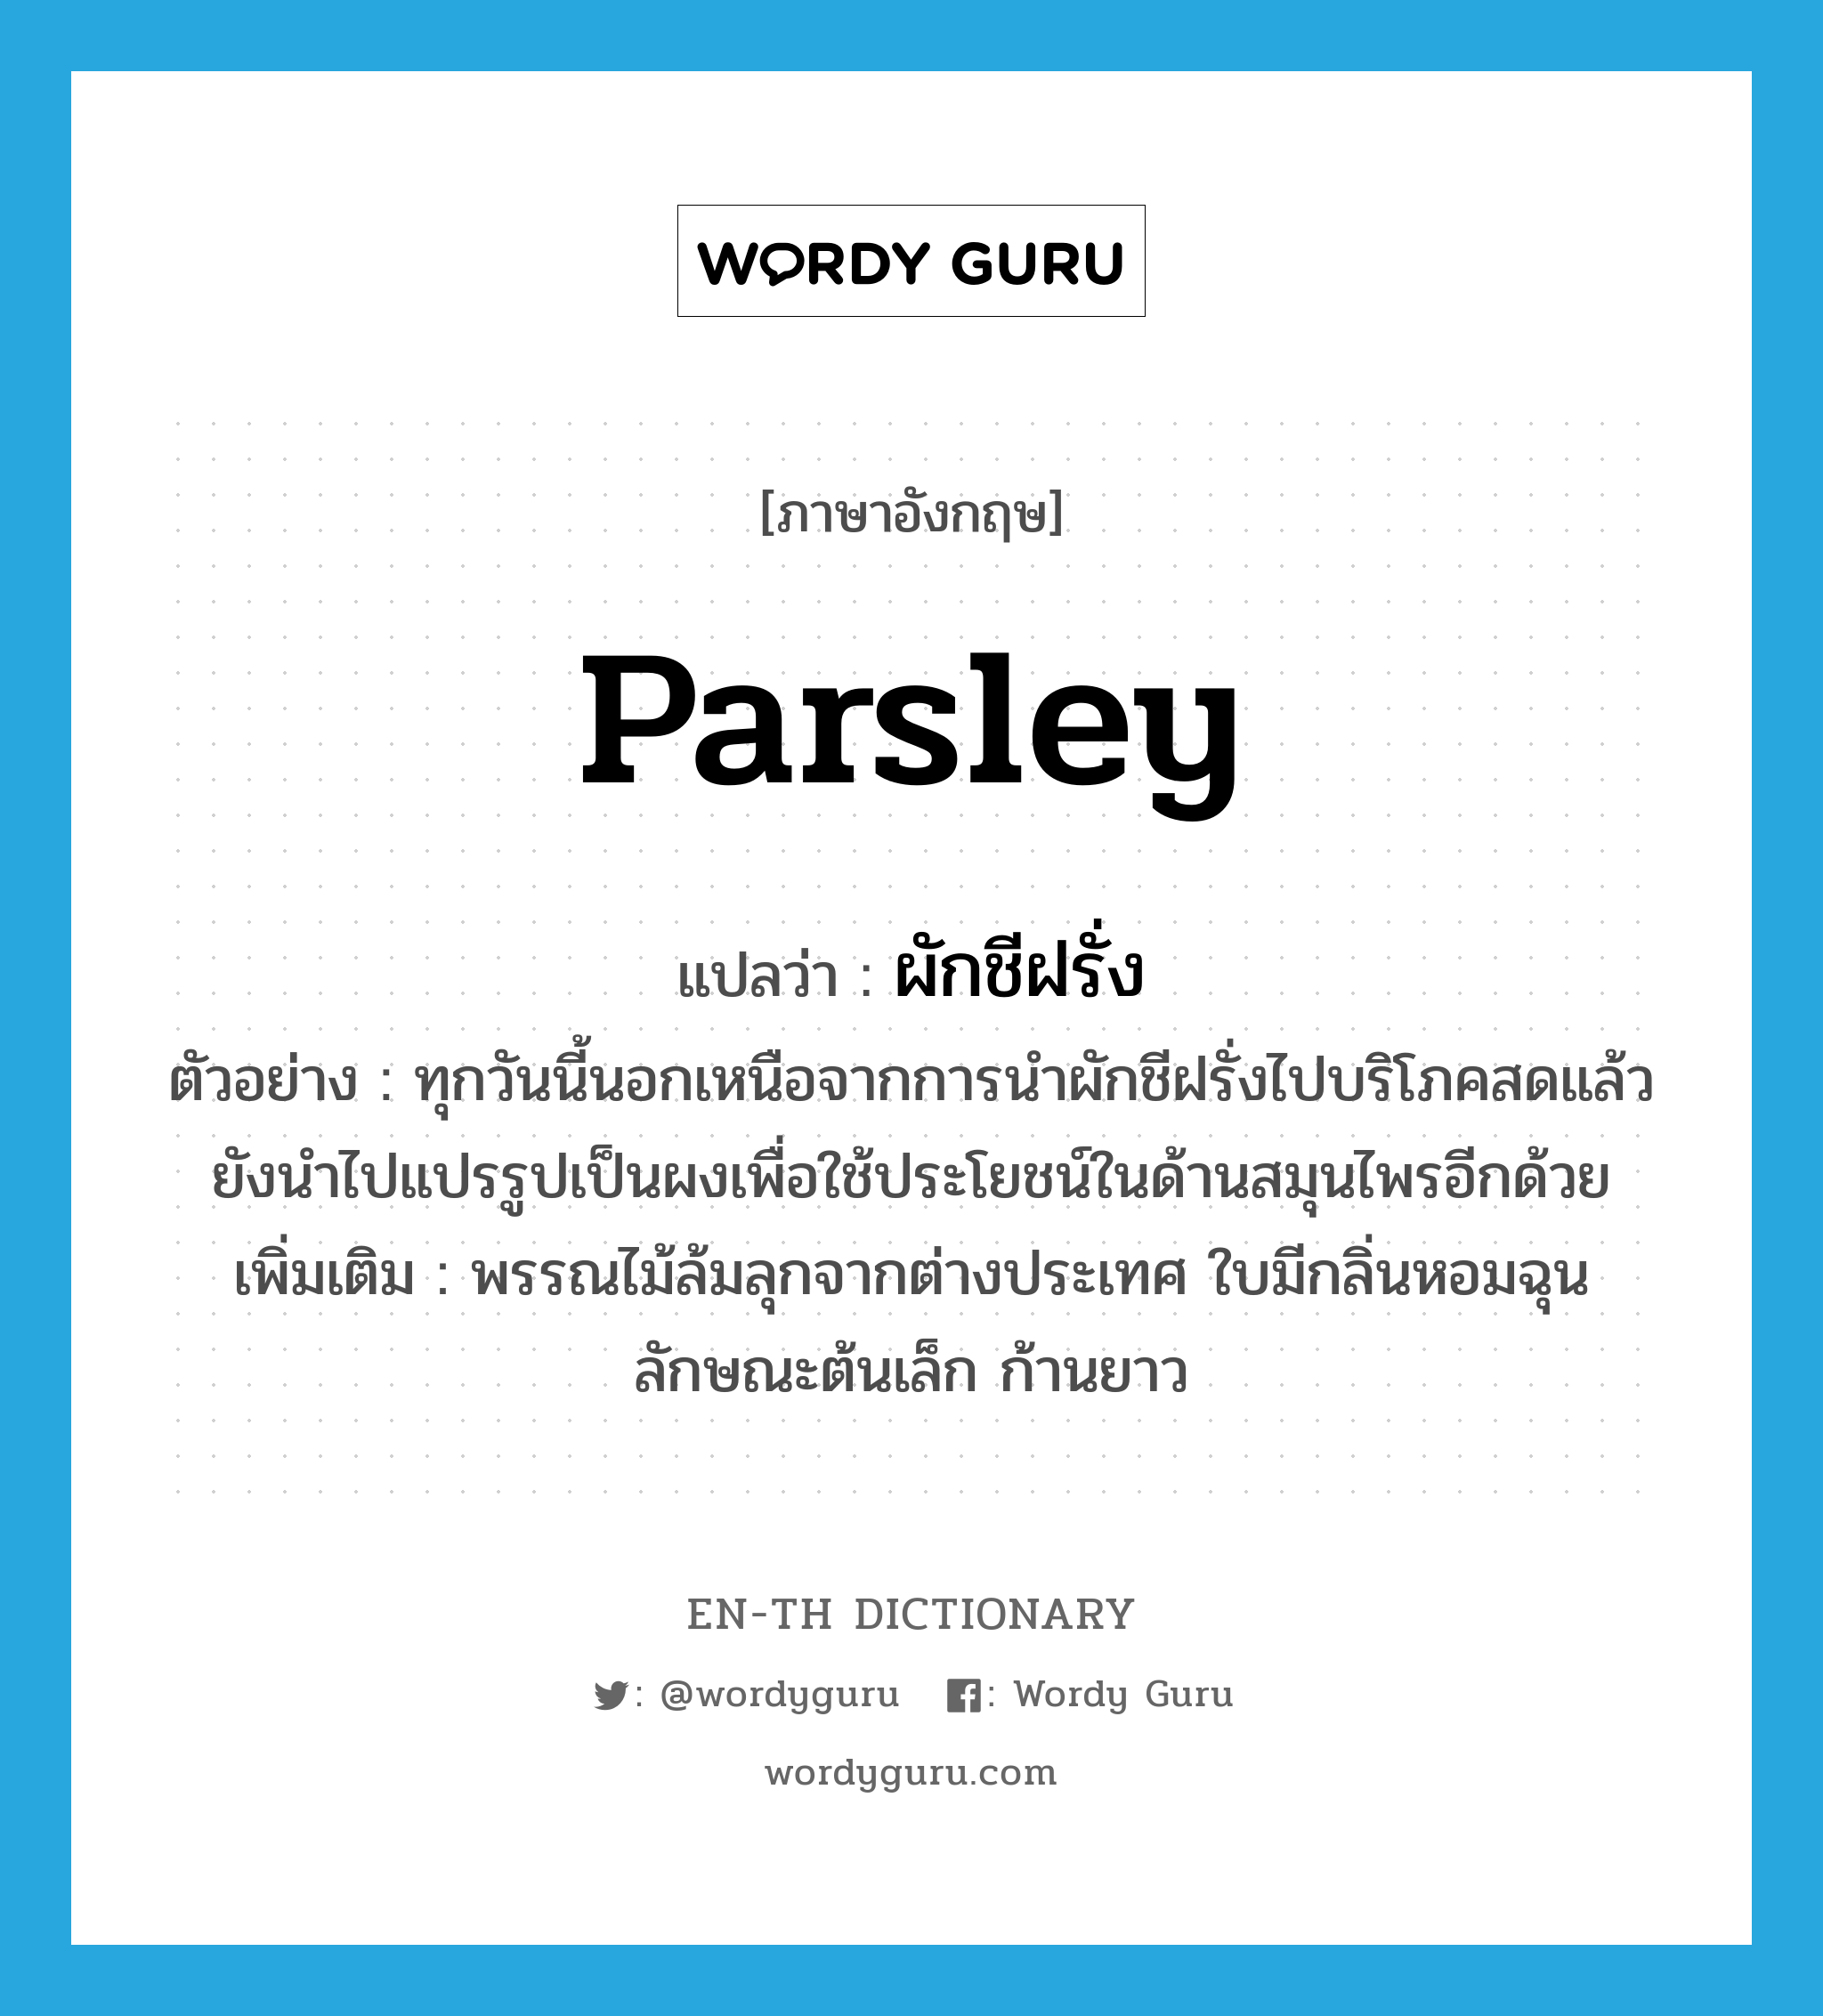 parsley แปลว่า?, คำศัพท์ภาษาอังกฤษ Parsley แปลว่า ผักชีฝรั่ง ประเภท N ตัวอย่าง ทุกวันนี้นอกเหนือจากการนำผักชีฝรั่งไปบริโภคสดแล้วยังนำไปแปรรูปเป็นผงเพื่อใช้ประโยชน์ในด้านสมุนไพรอีกด้วย เพิ่มเติม พรรณไม้ล้มลุกจากต่างประเทศ ใบมีกลิ่นหอมฉุน ลักษณะต้นเล็ก ก้านยาว หมวด N